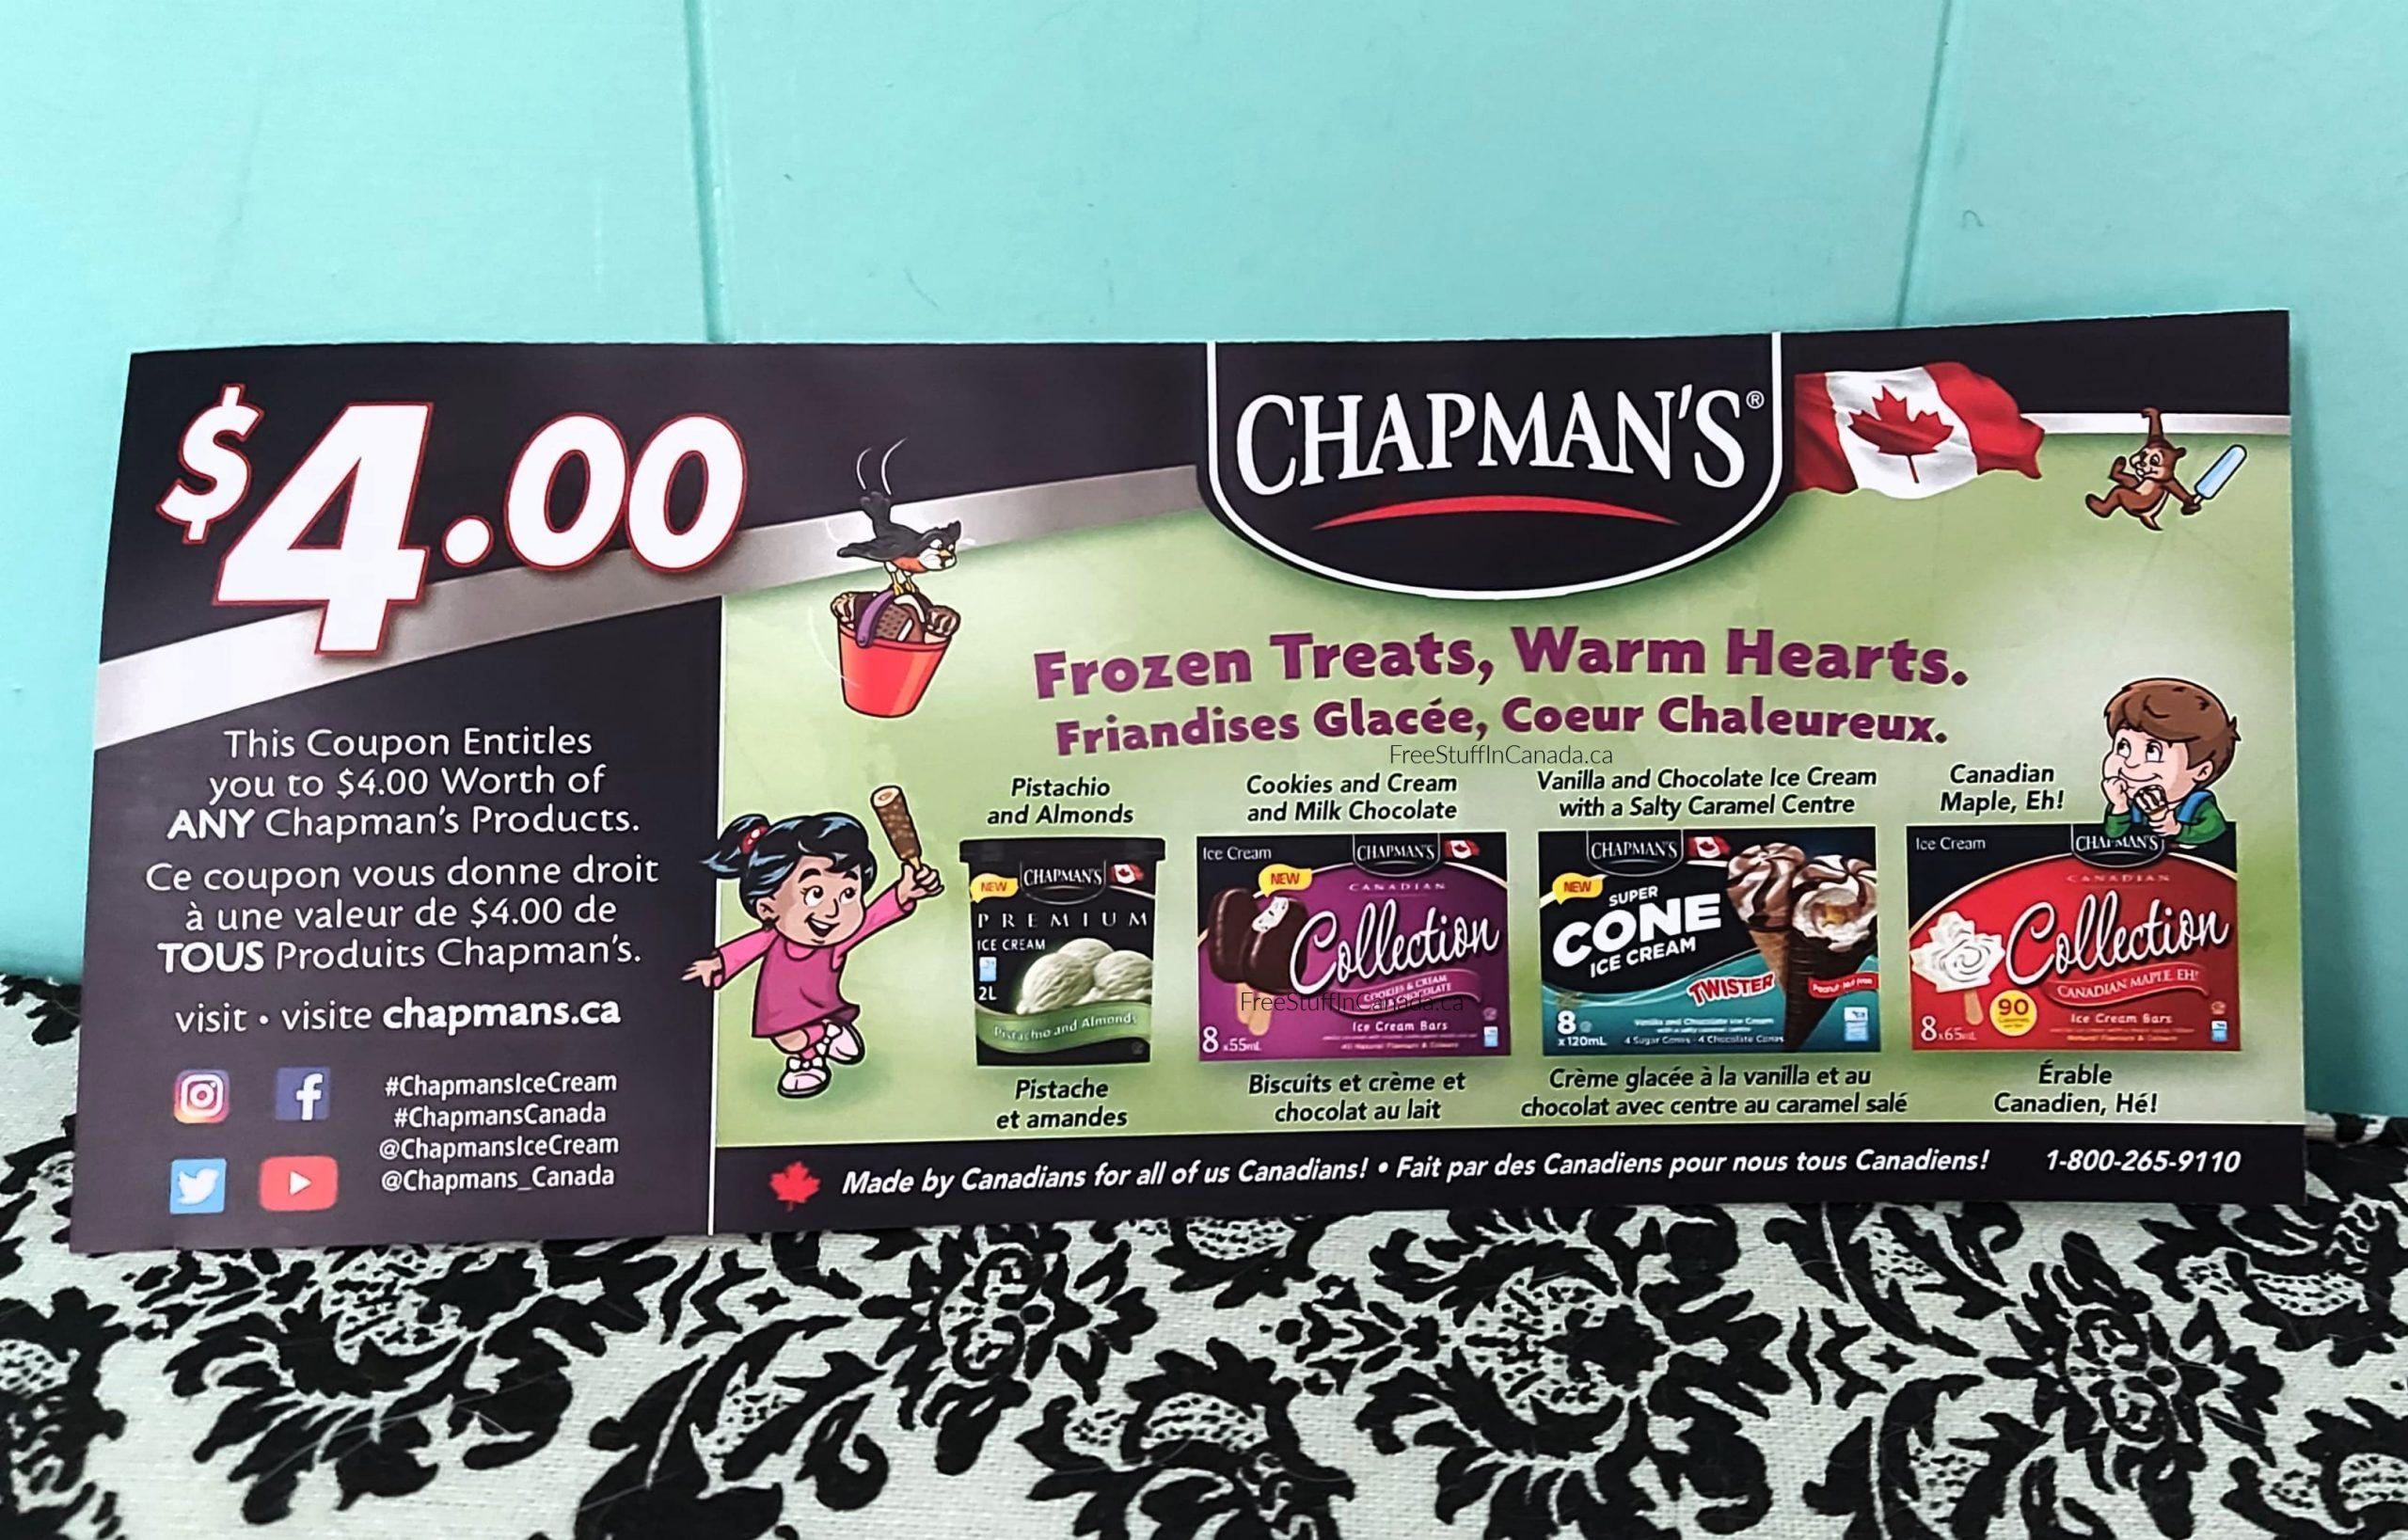 Chapman's Canada Coupon